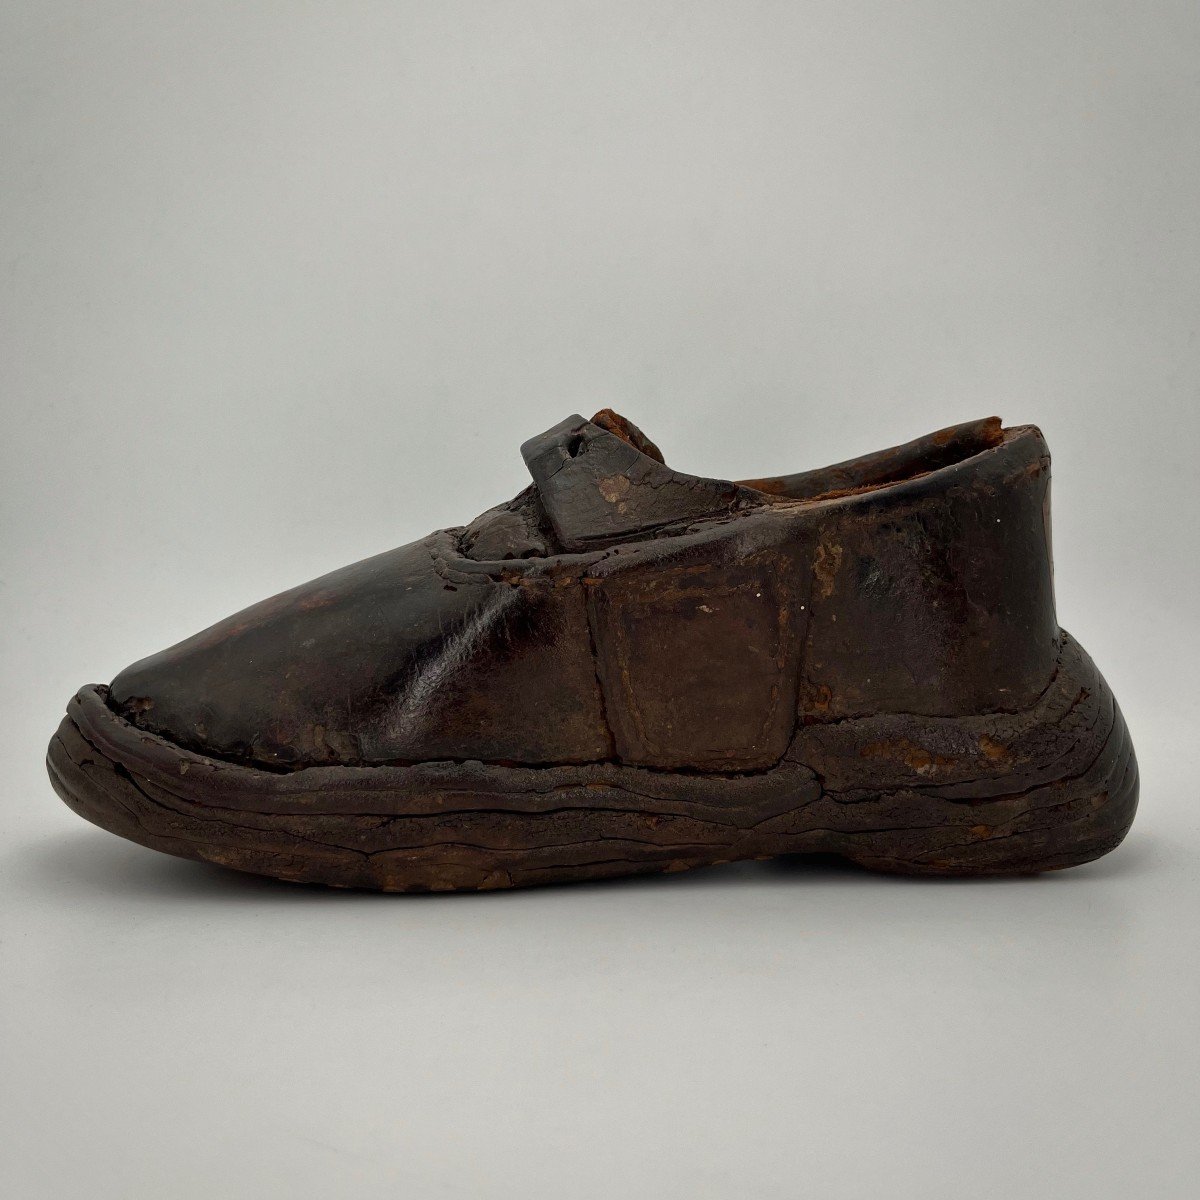 Enseigne de cordonnier ou objet de maîtrise XVIIIe, soulier en cuir prov. du musée de Cluny 18e